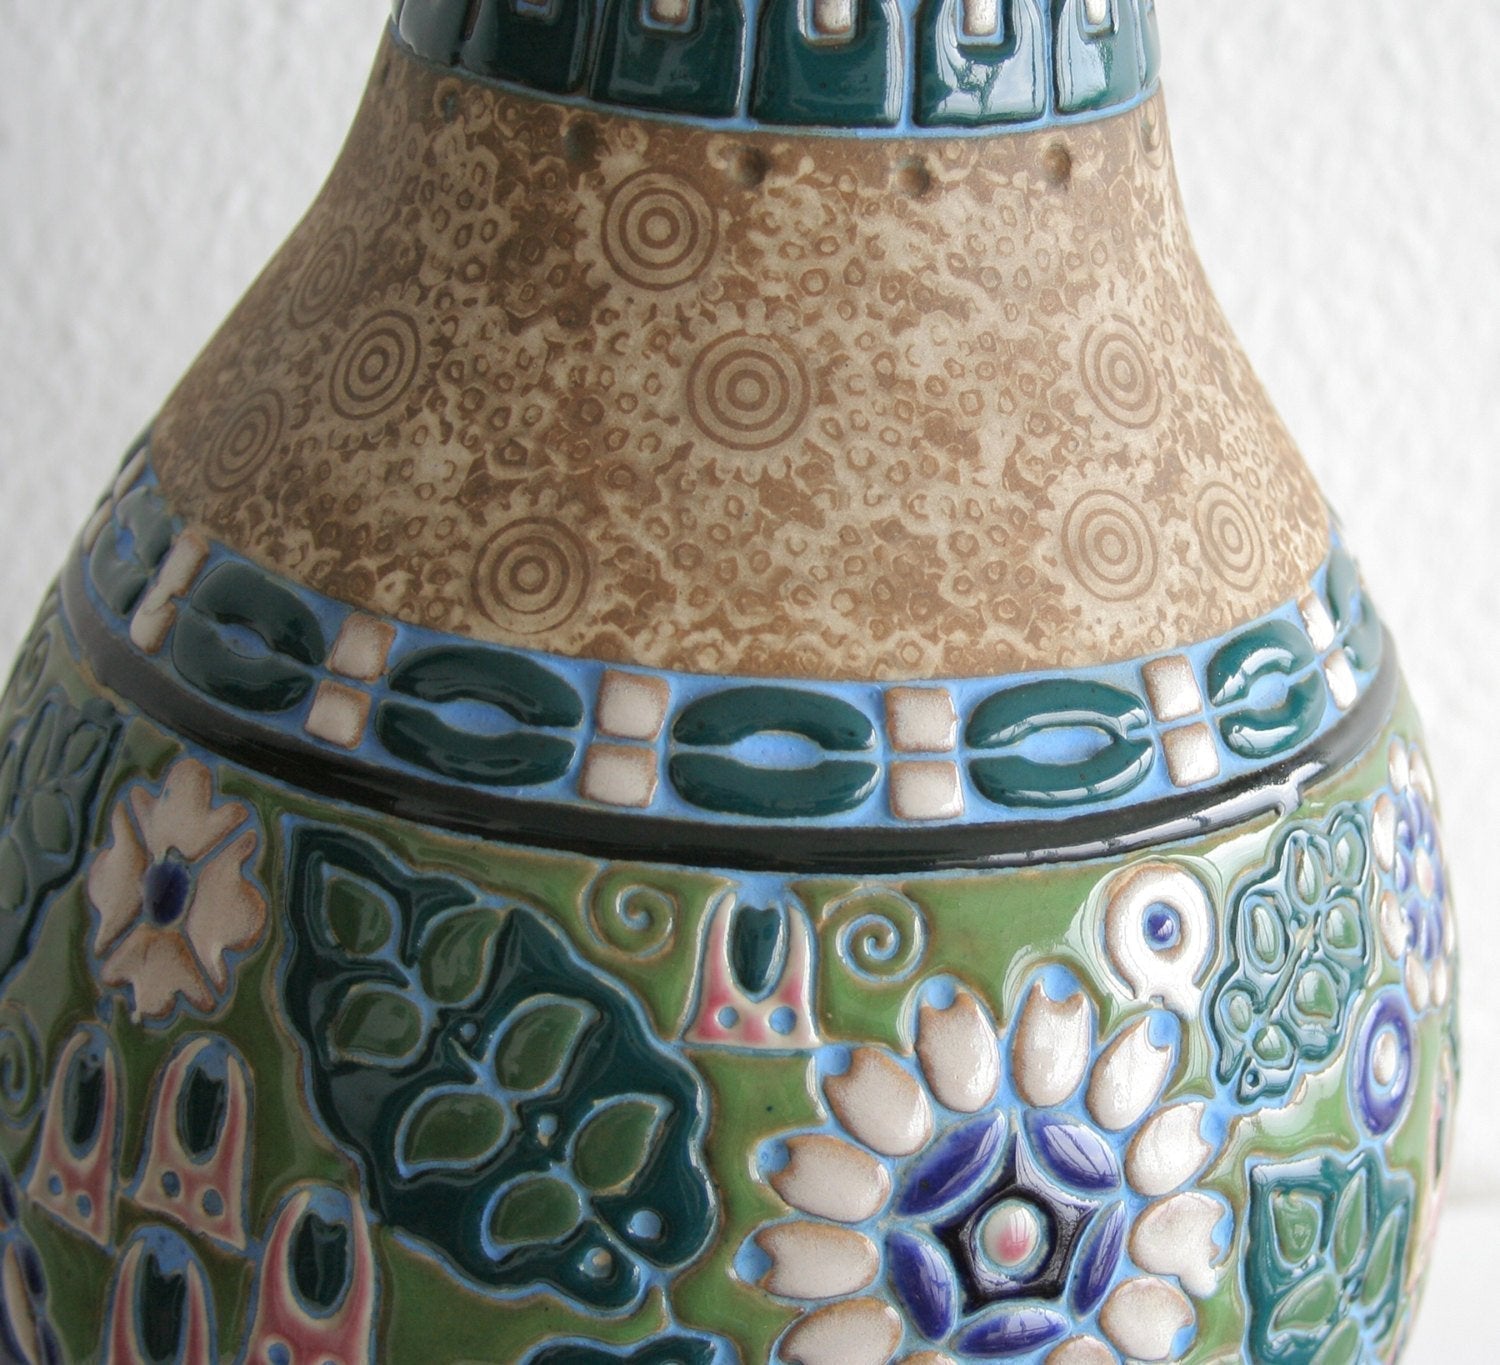 AMPHORA Campina Parrot & Flowers Ceramic Floor Vase Mollaris.com 